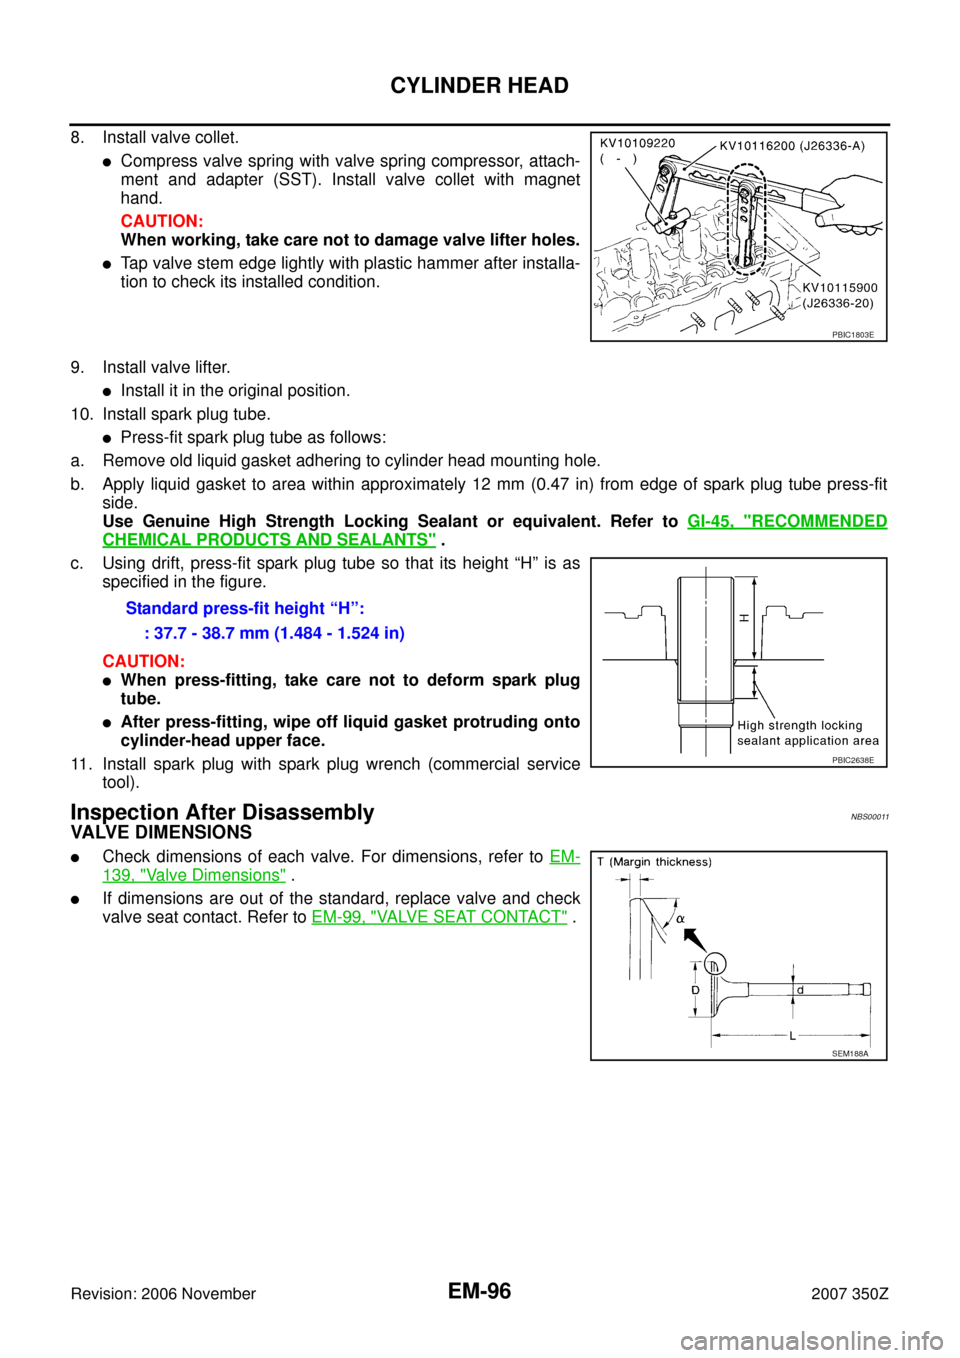 NISSAN 350Z 2007 Z33 Engine Mechanical Workshop Manual EM-96
CYLINDER HEAD
Revision: 2006 November2007 350Z
8. Install valve collet.
Compress valve spring with valve spring compressor, attach-
ment and adapter (SST). Install valve collet with magnet
hand